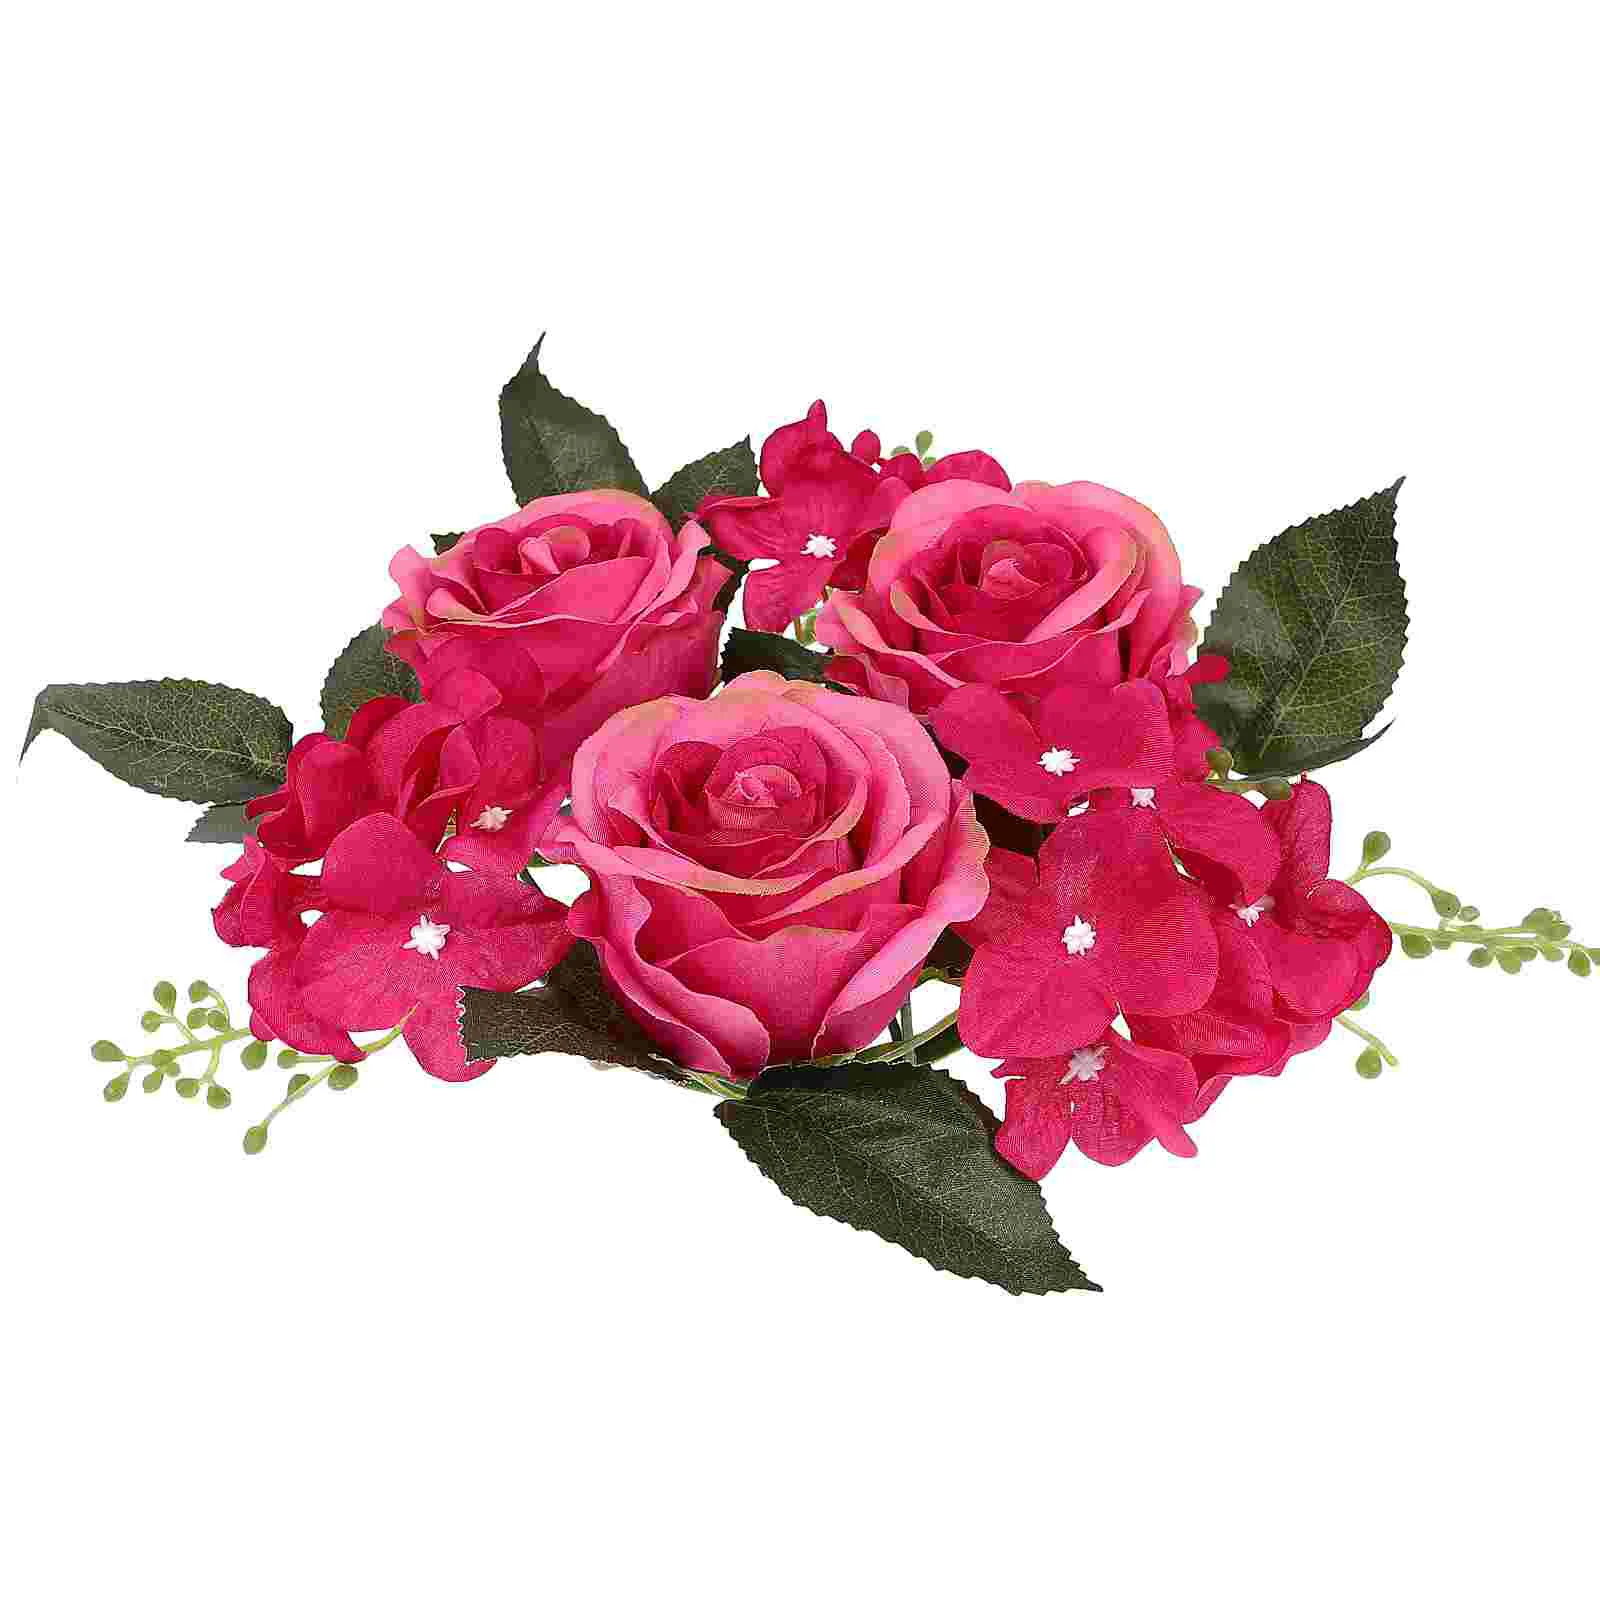 Купи Ring Rings Rose Flower Centerpieces Wreath Floral Fake Table Tables Wedding Wreaths Garland Holder Silk Roses Christmas False за 206 рублей в магазине AliExpress